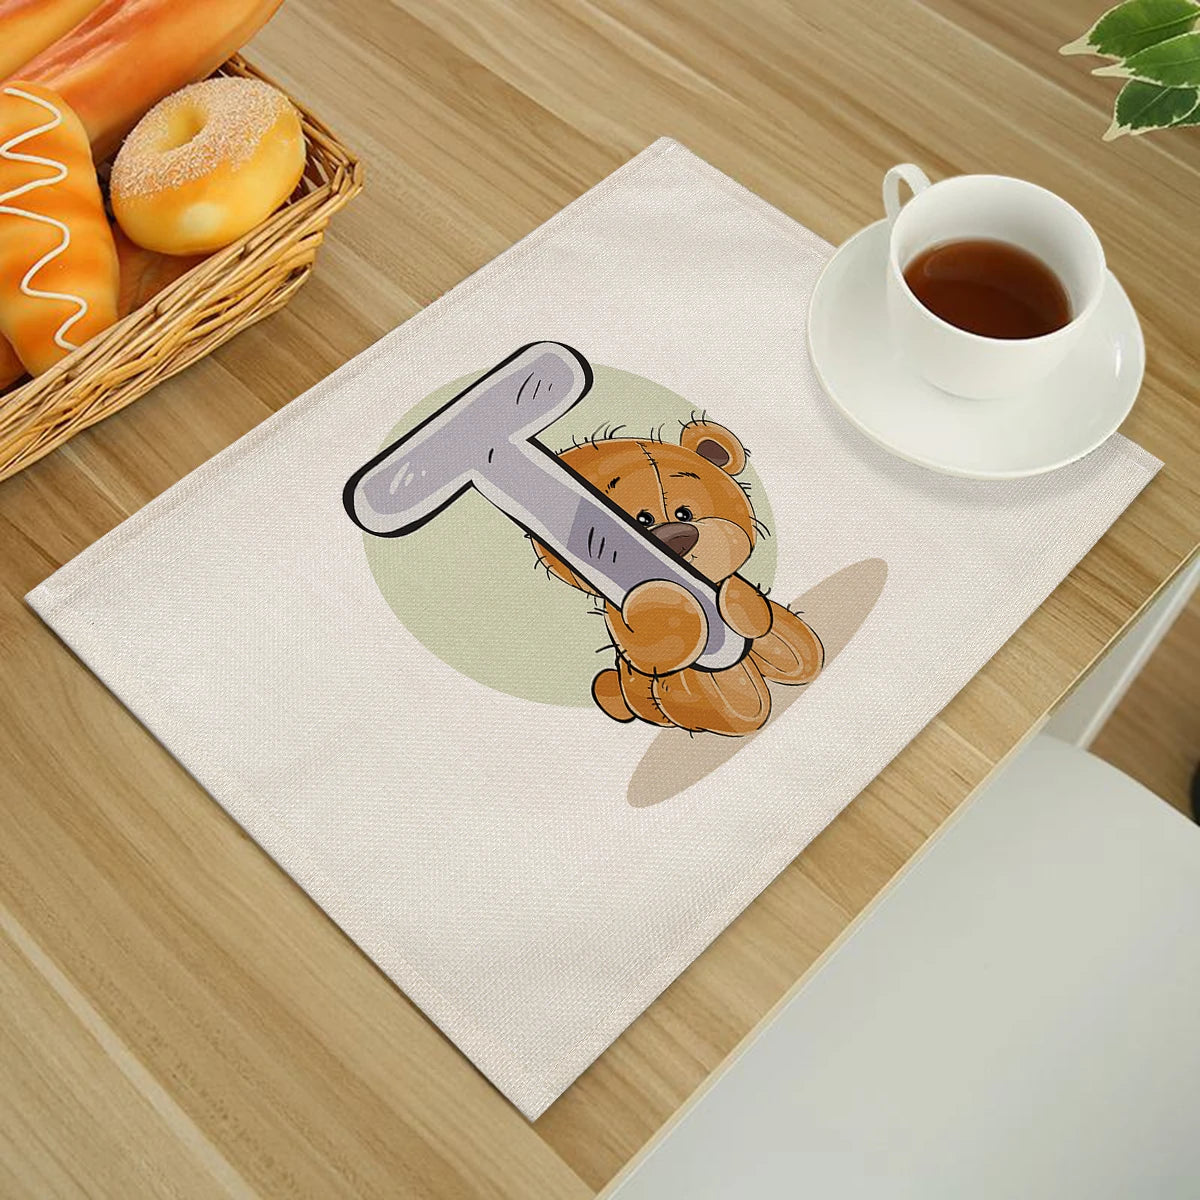 Kartun Lucu Animal Beruang Dapur Dapur untuk Anak-anak Anak Bahasa Inggris Alfabet A-Z Print Cotton Linen Meja Makan Coaster